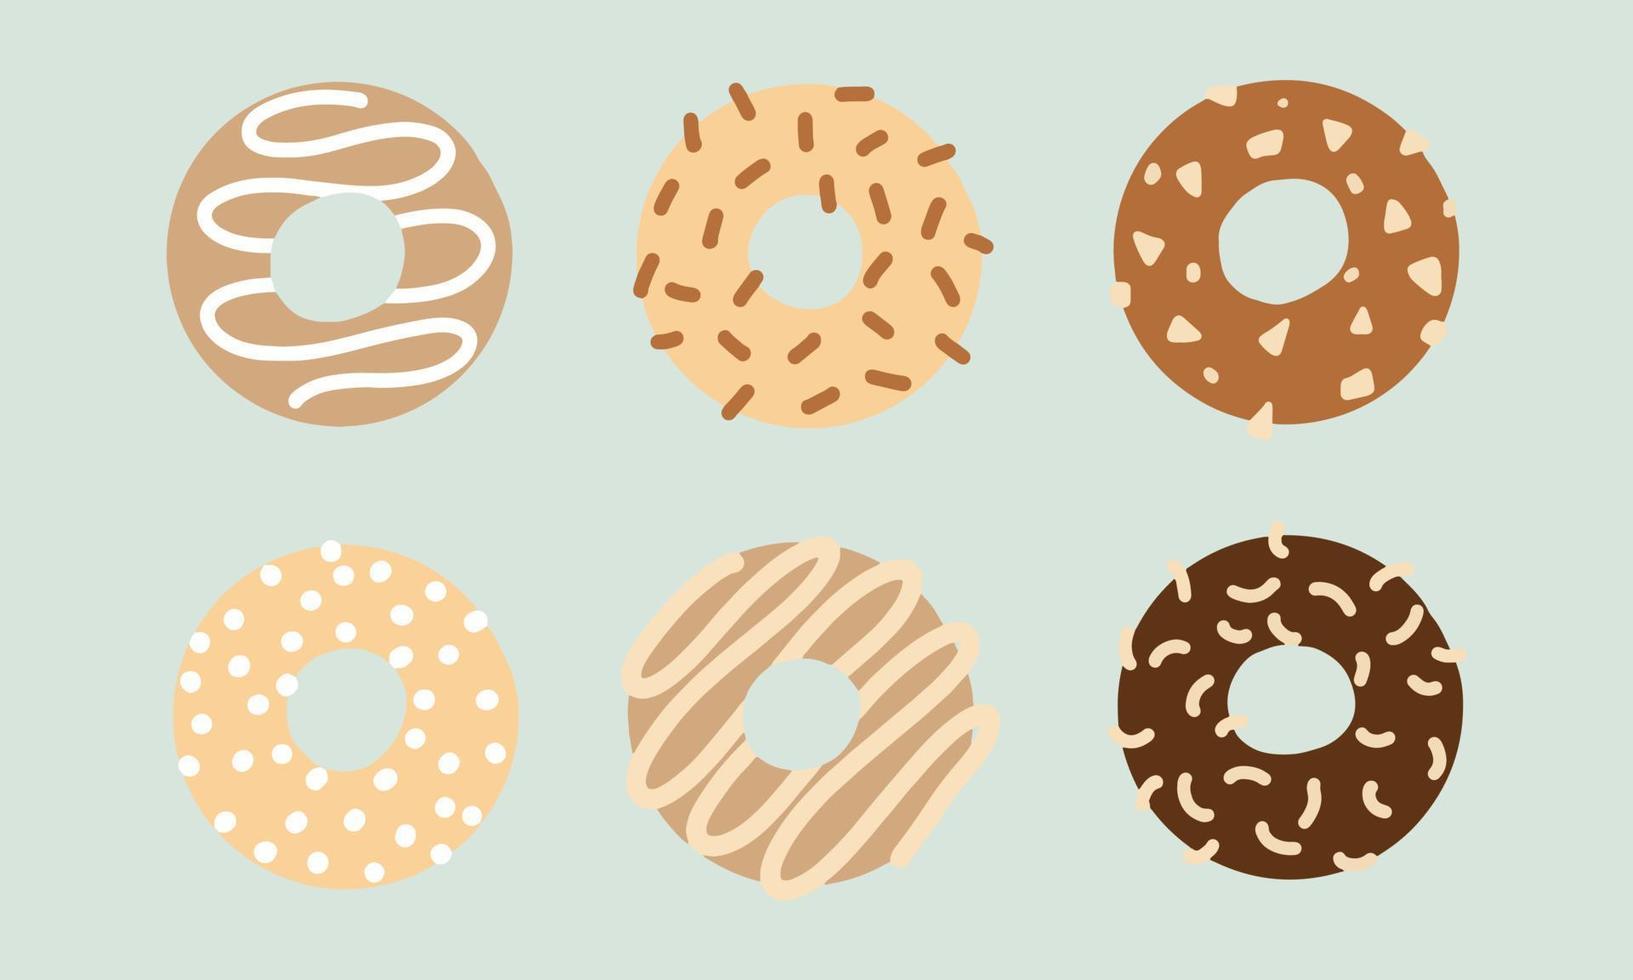 ilustrações de design plano de donuts com várias coberturas. vetor